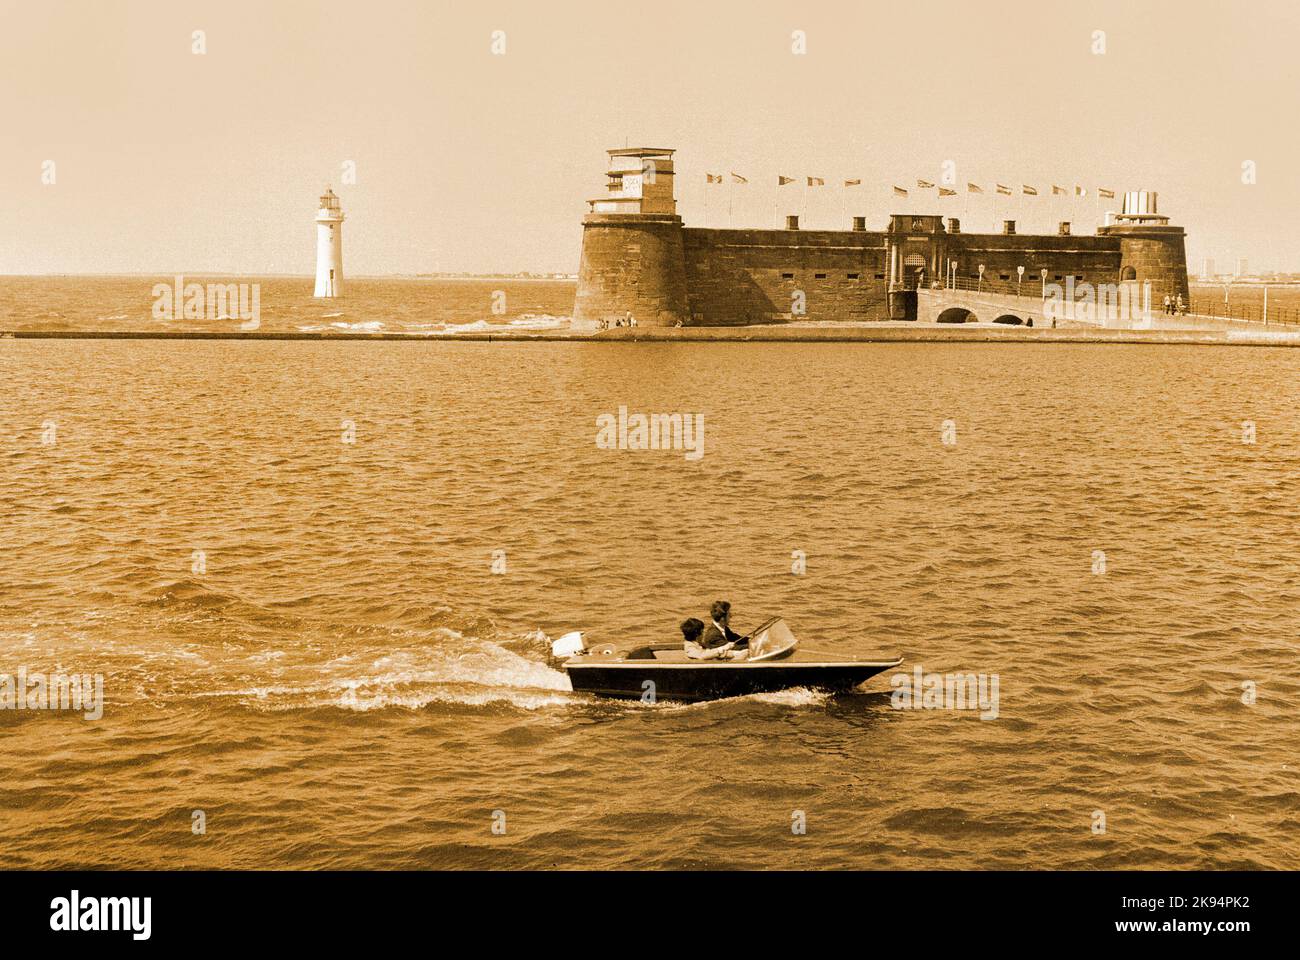 Vintage New Brighton, 1970. Perch Rock o la batteria. Wallasey, turisti che si godono un giro in barca, Merseyside. Immagine seppia, Foto Stock